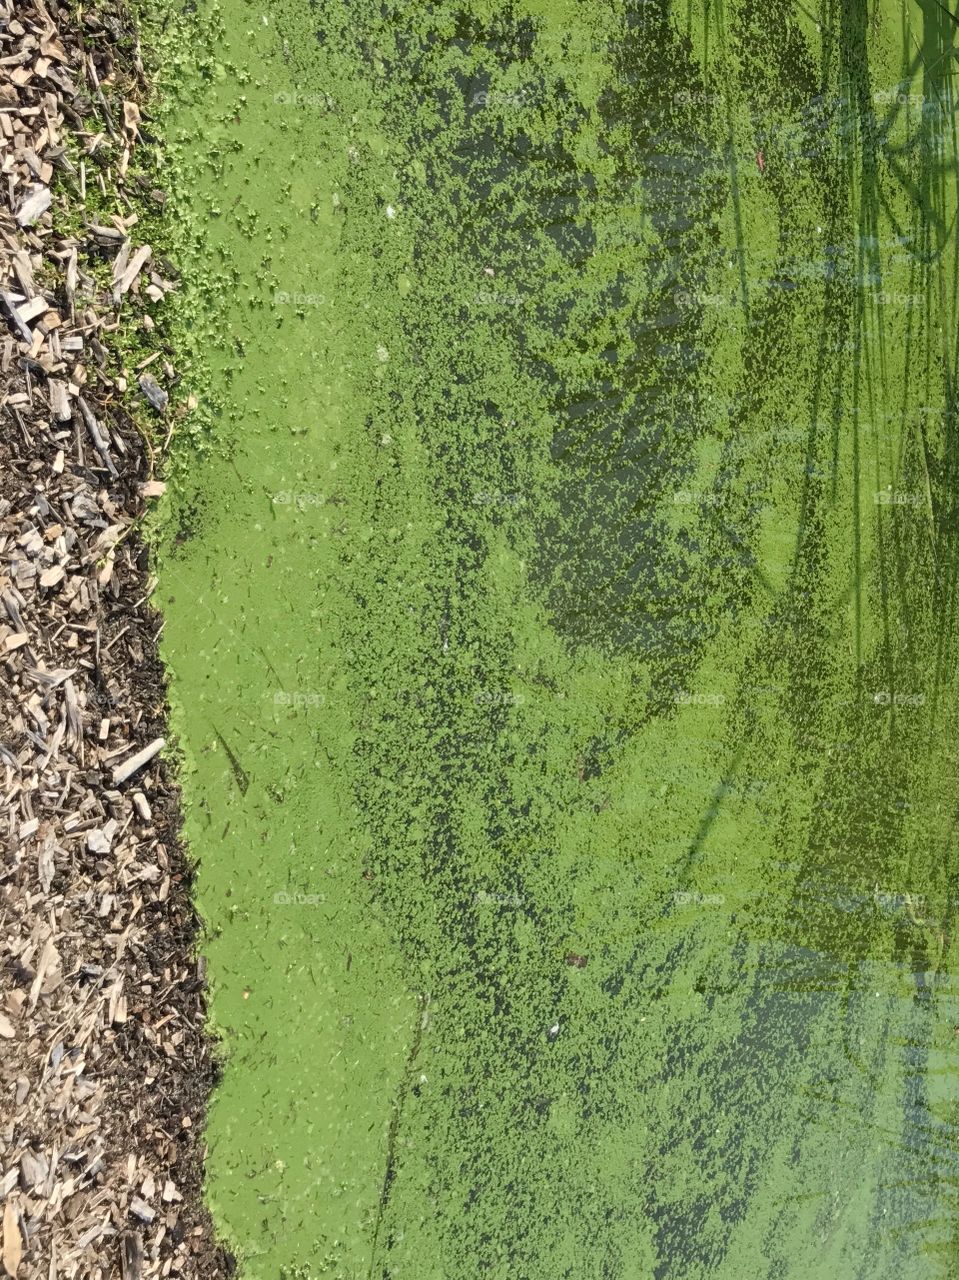 Algae in waterway 